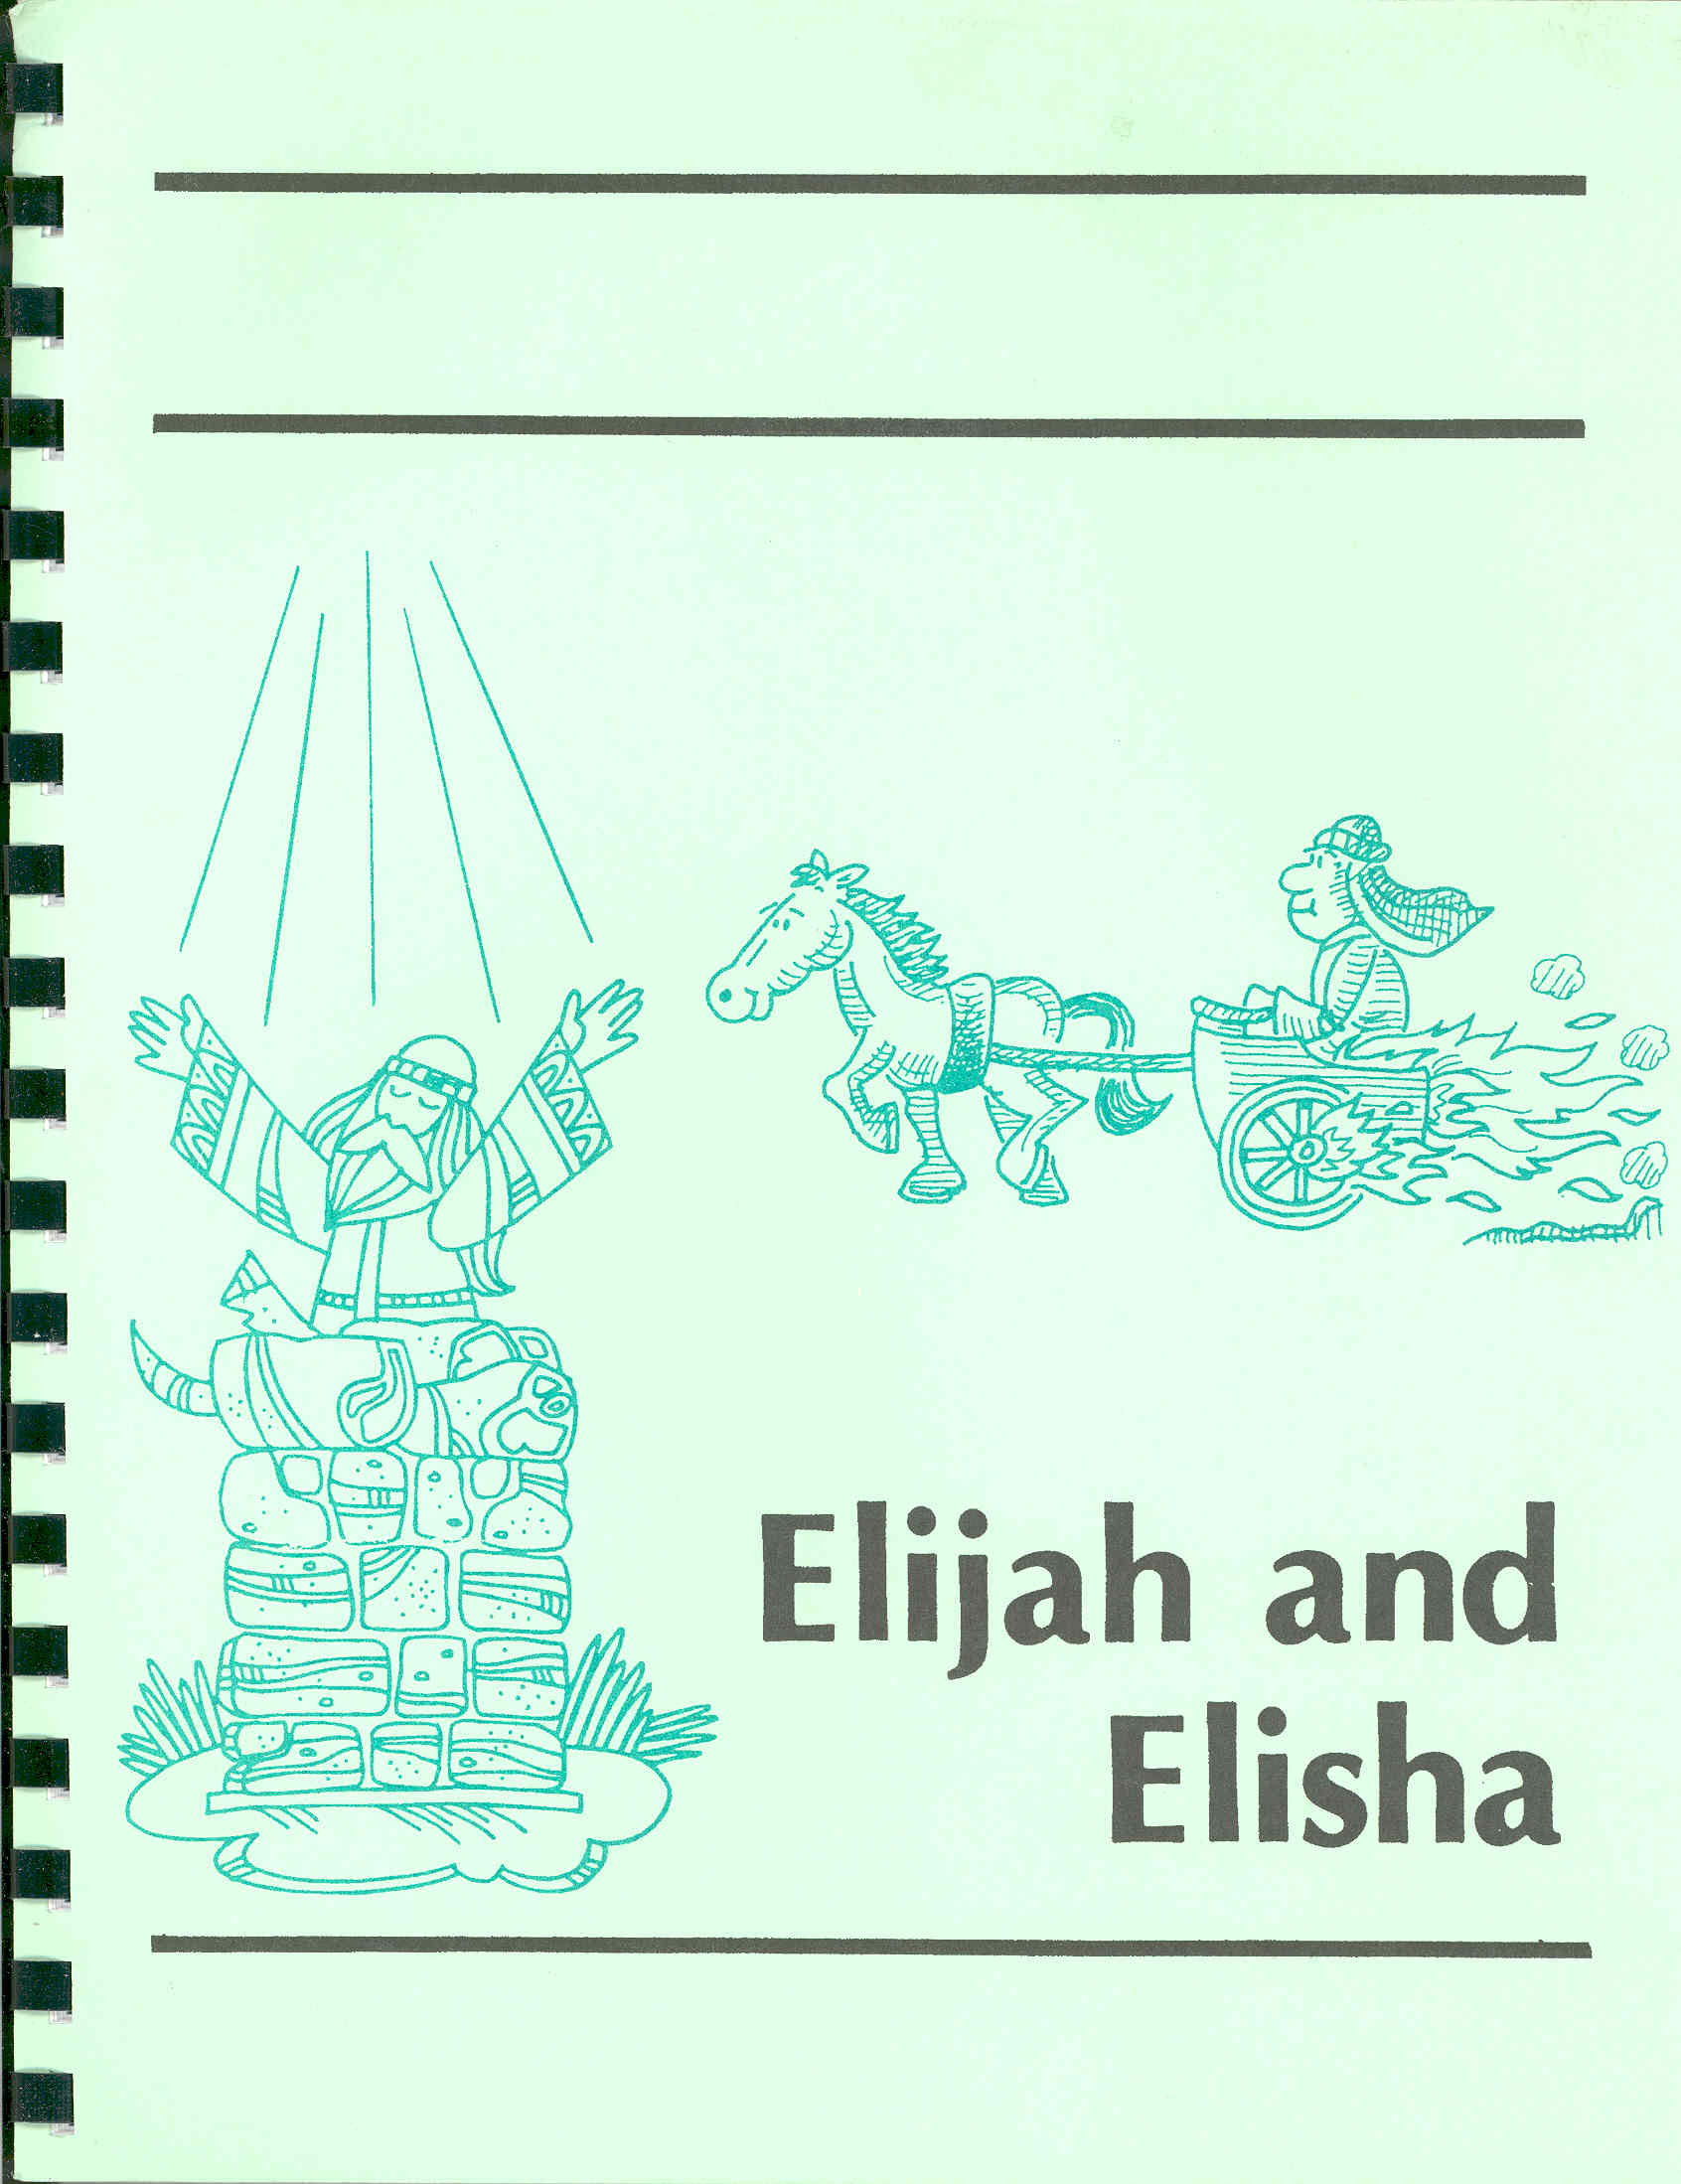 Elijah & Elisha